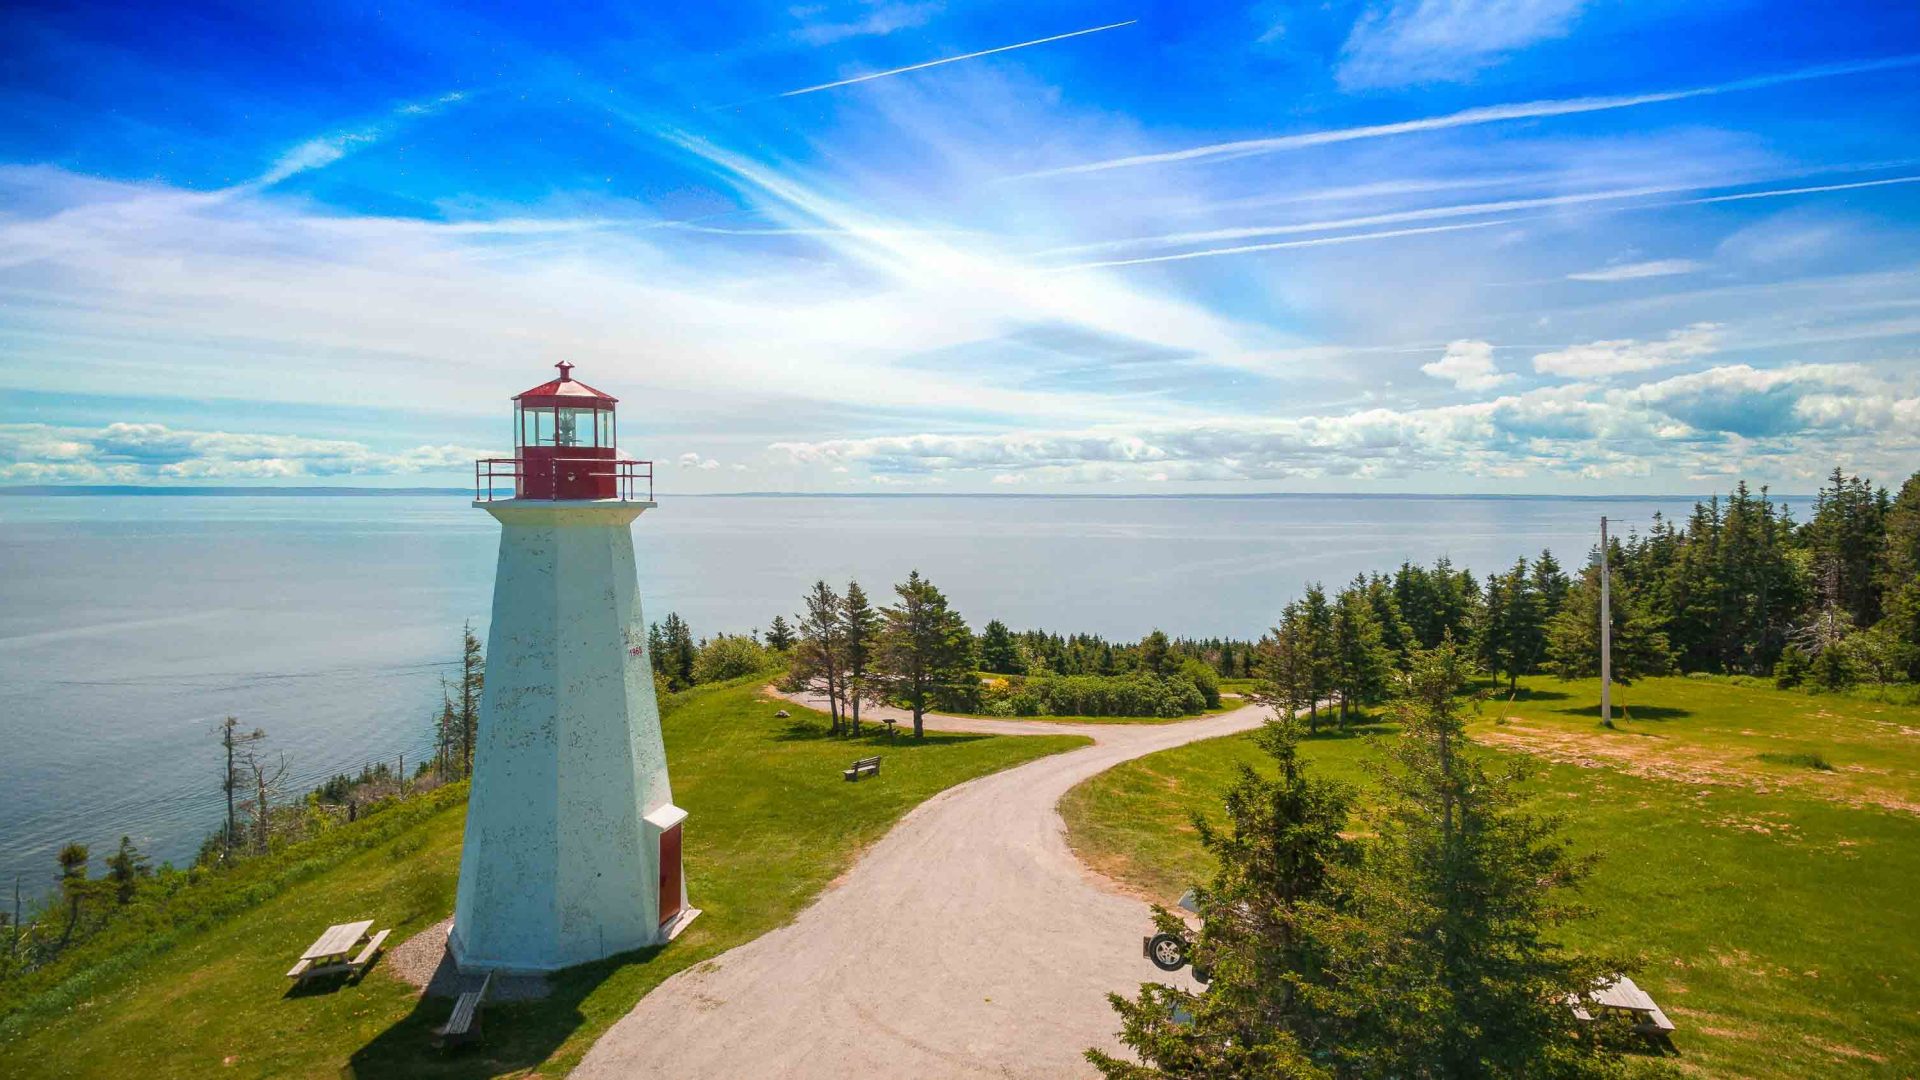 A path winds past a coastal lighthouse.